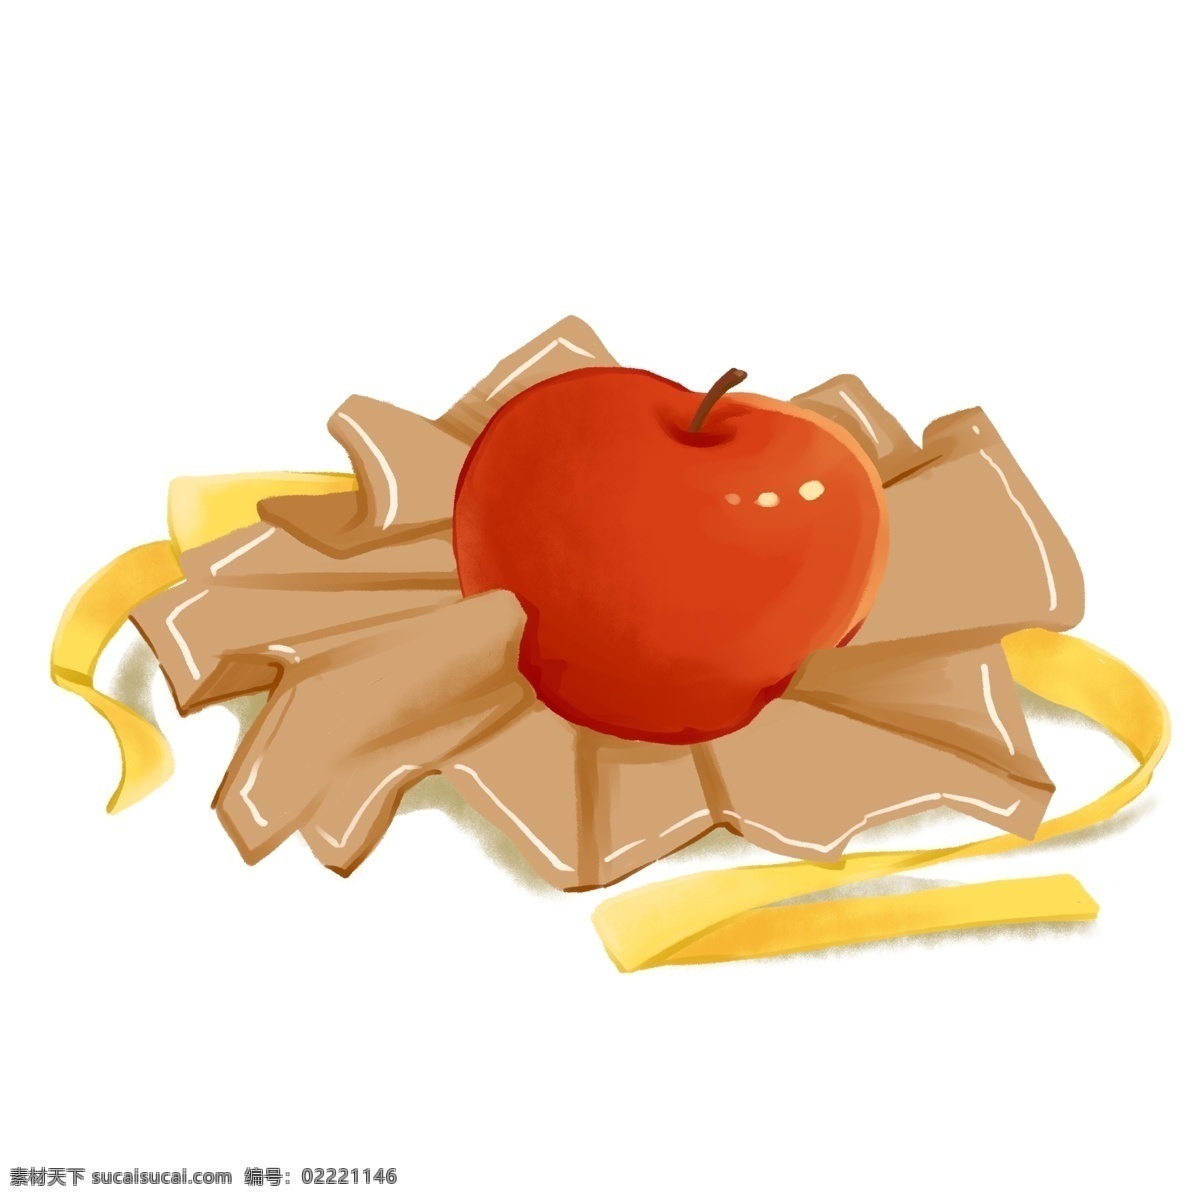 圣诞节 打开 红色 苹 安 果 礼物 立体 免 抠 元素 打开包装 牛皮纸 苹果 平安节 节日 西方传统 黄丝带 可爱 红苹果 圣诞礼物